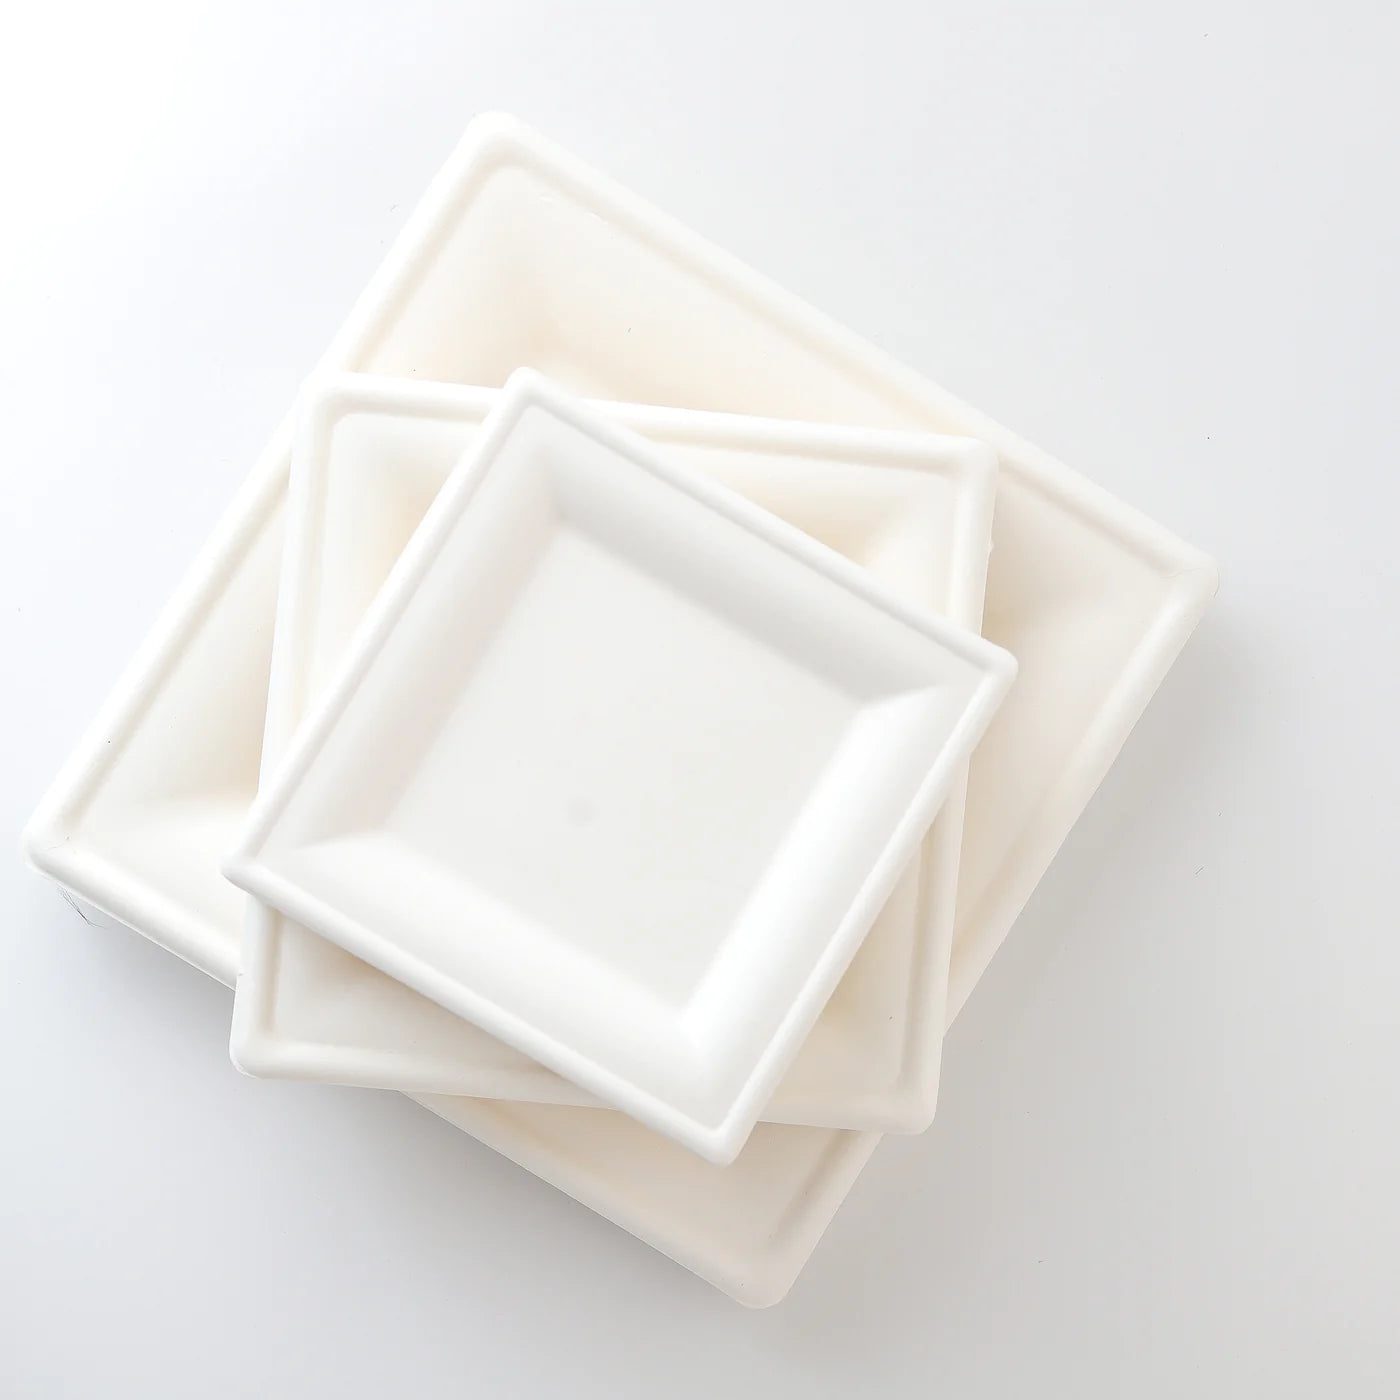 Lapos tányér - Cukornád tányér szögletes (260x260)  - 50 db/cs - Greenstic